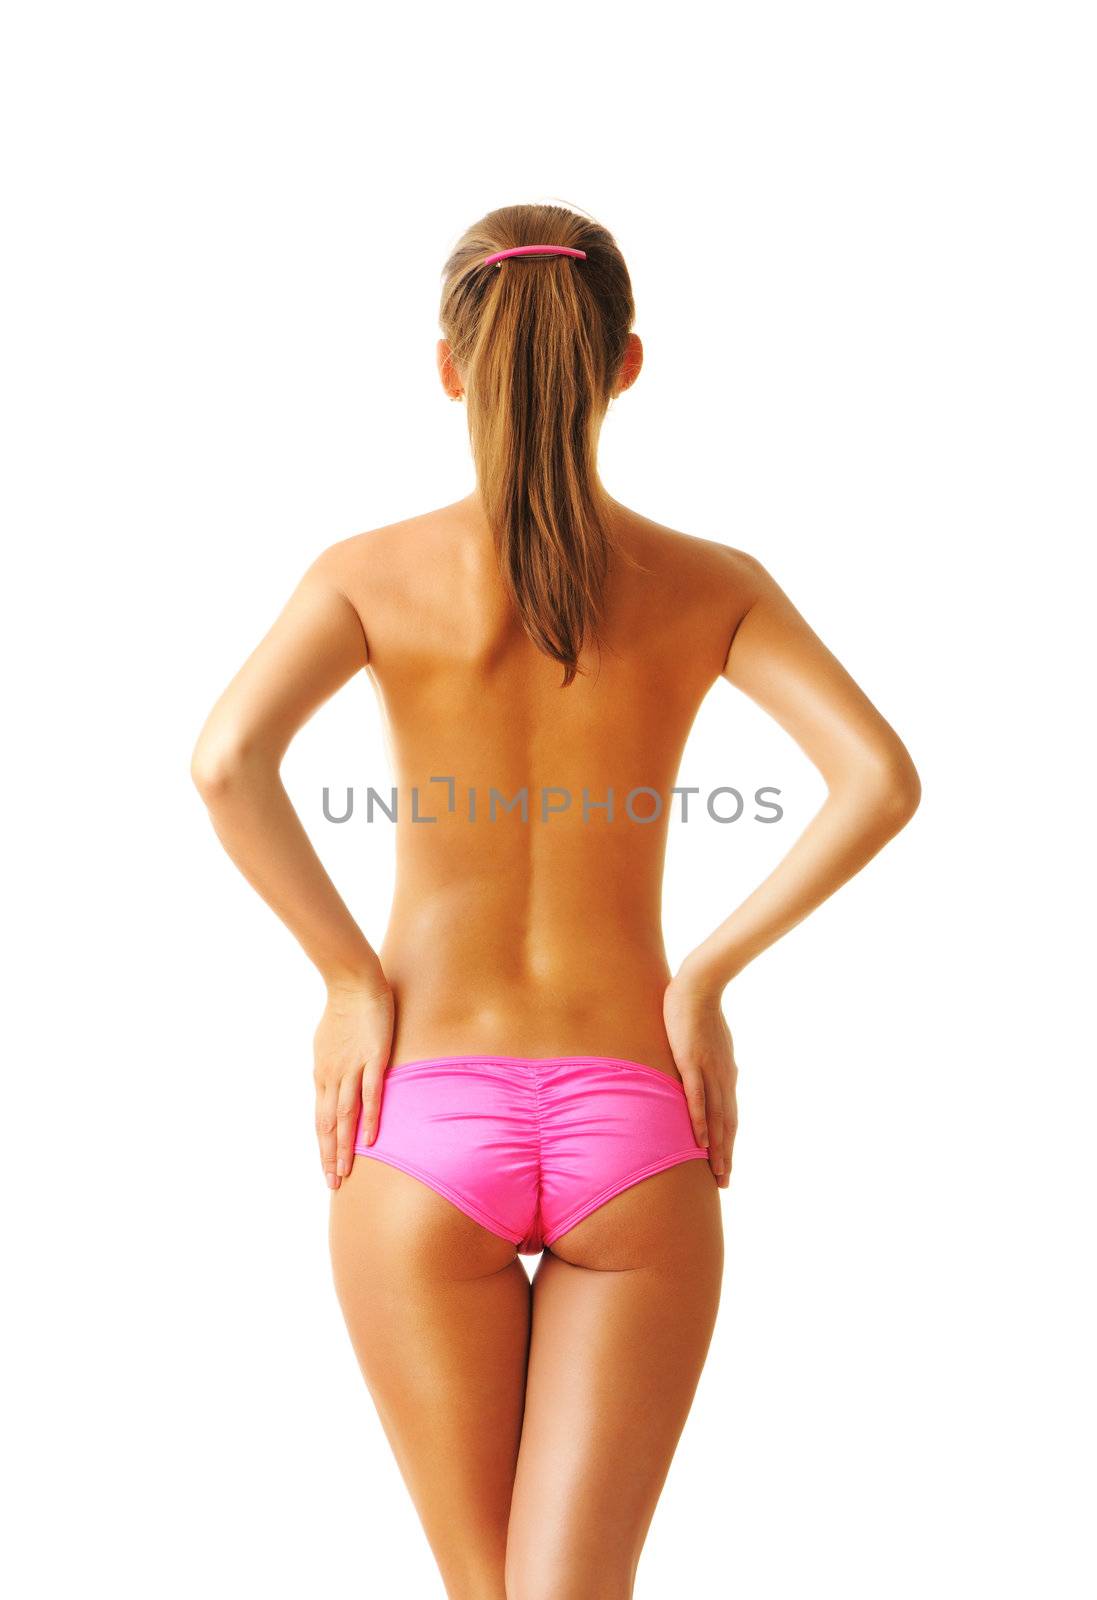 Sexy tan woman in bikini by haveseen